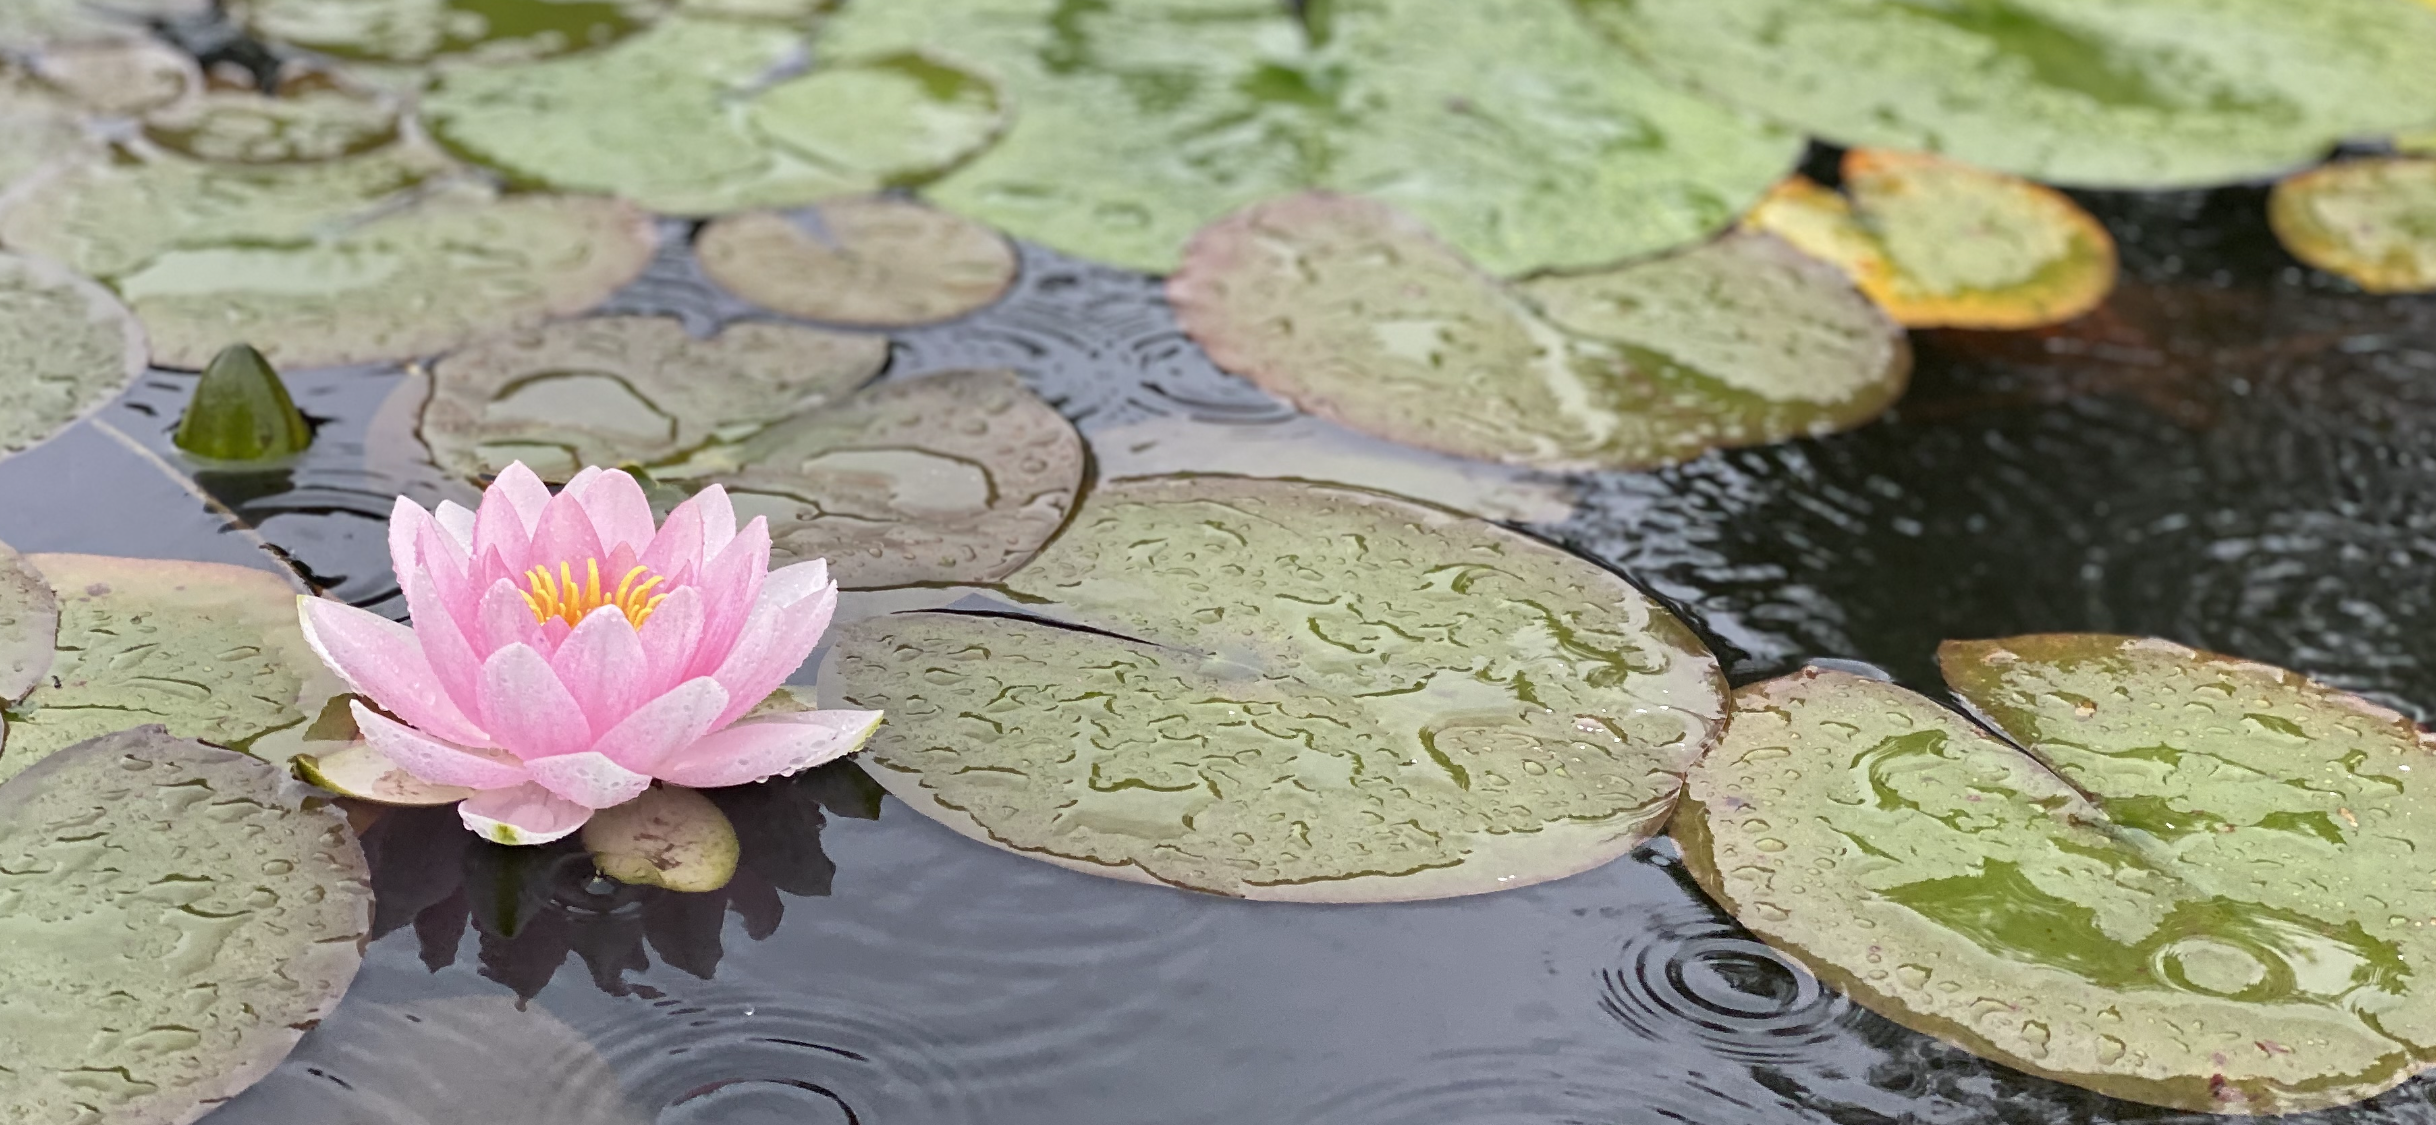 Pink lotus flower in water 